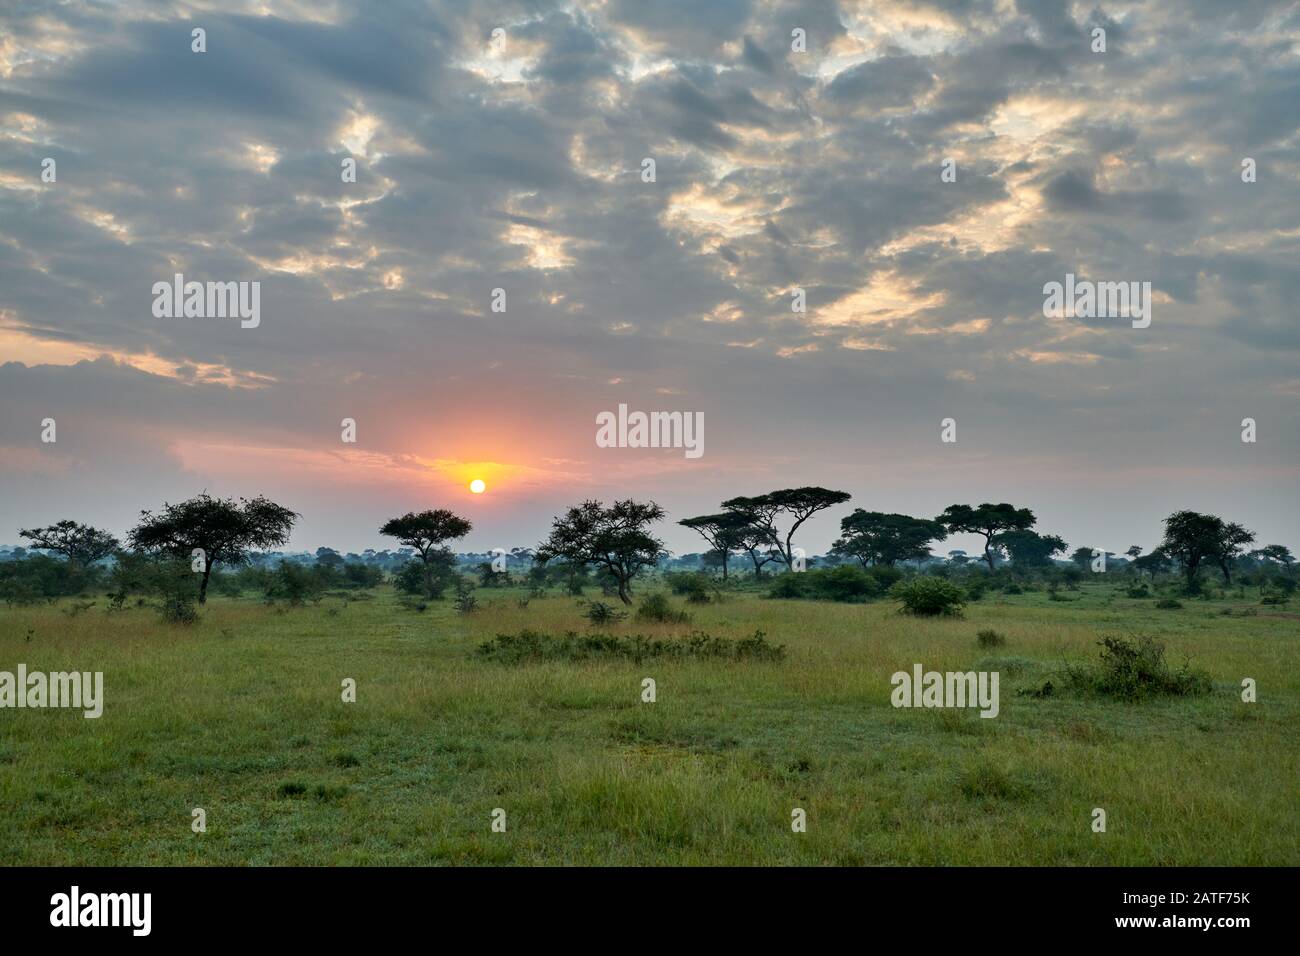 Paysage avec lever de soleil dans le Parc National du Serengeti, site du patrimoine mondial de l'UNESCO, Tanzanie, Afrique Banque D'Images